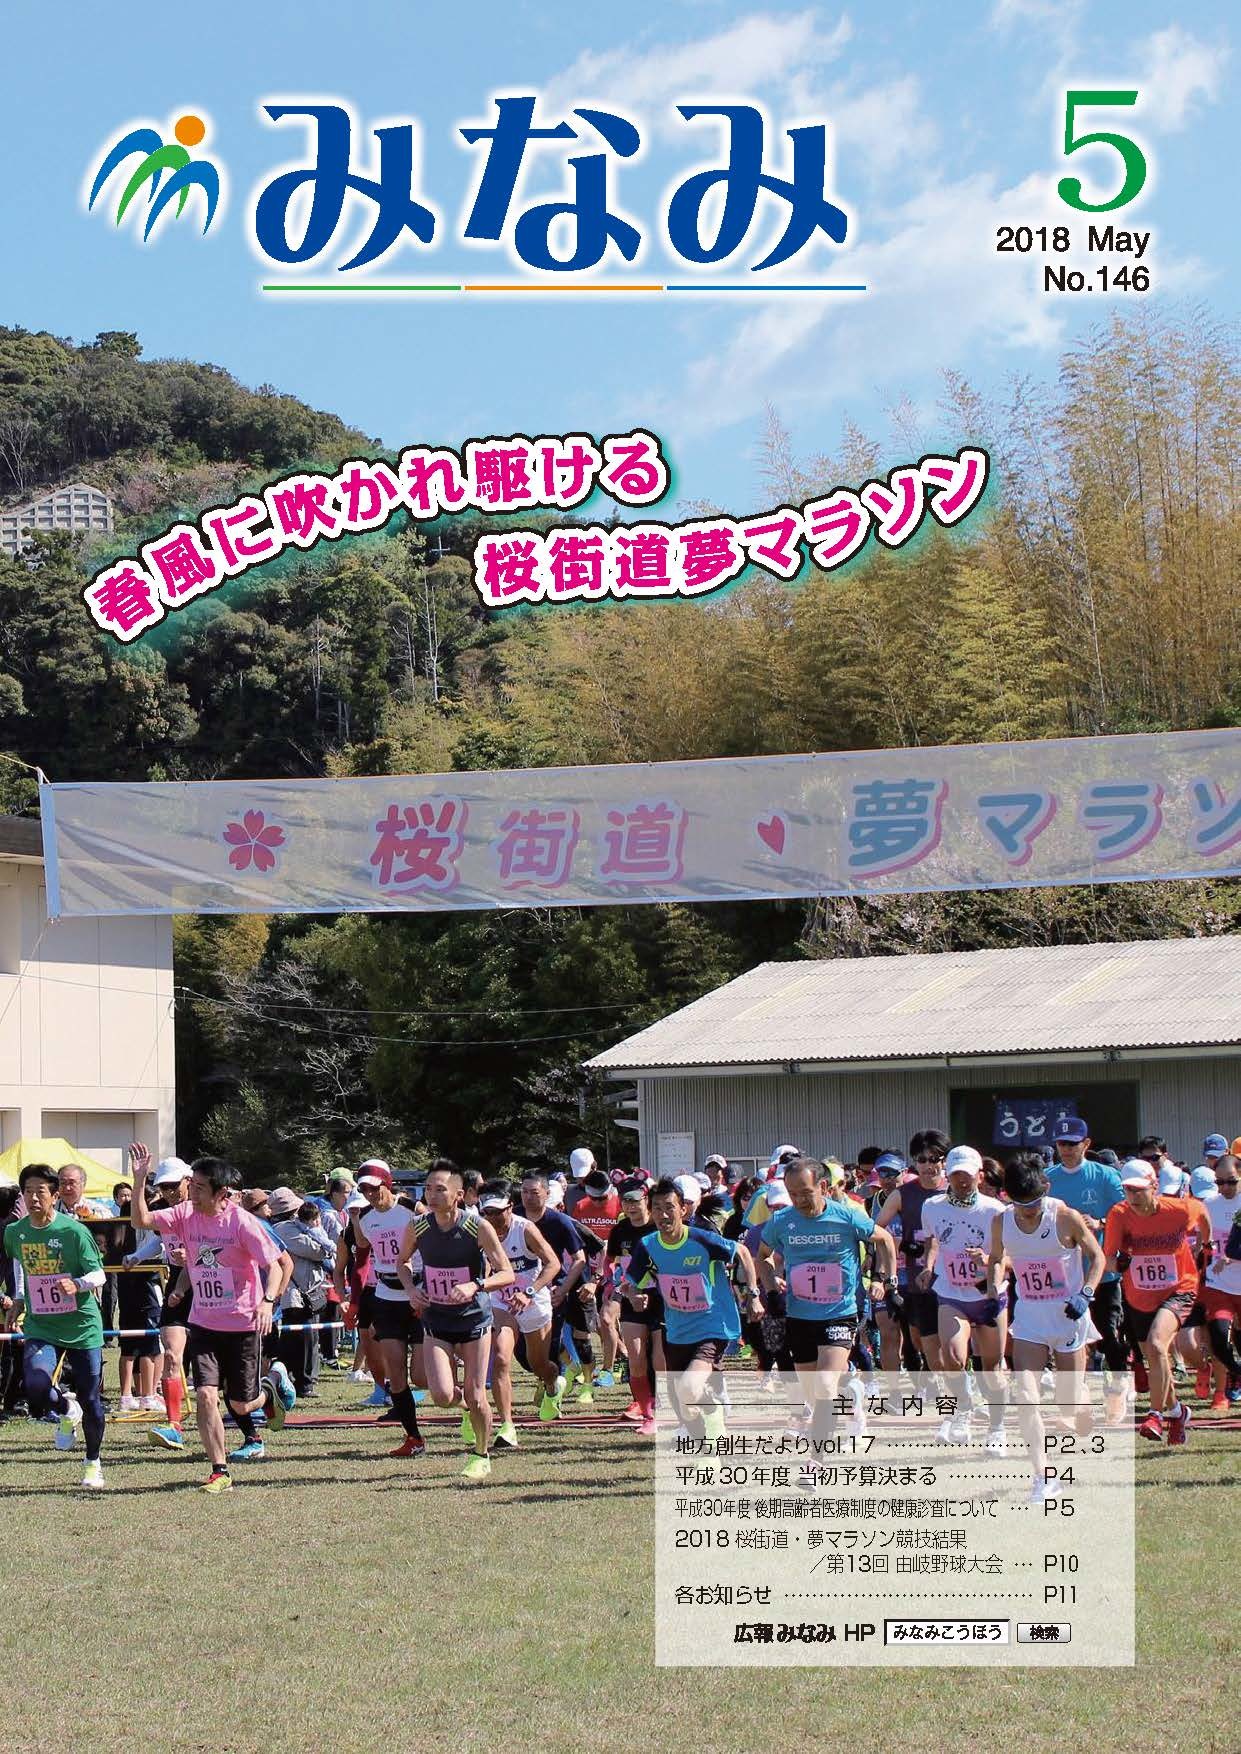 表紙「2018桜街道・夢マラソン」の様子